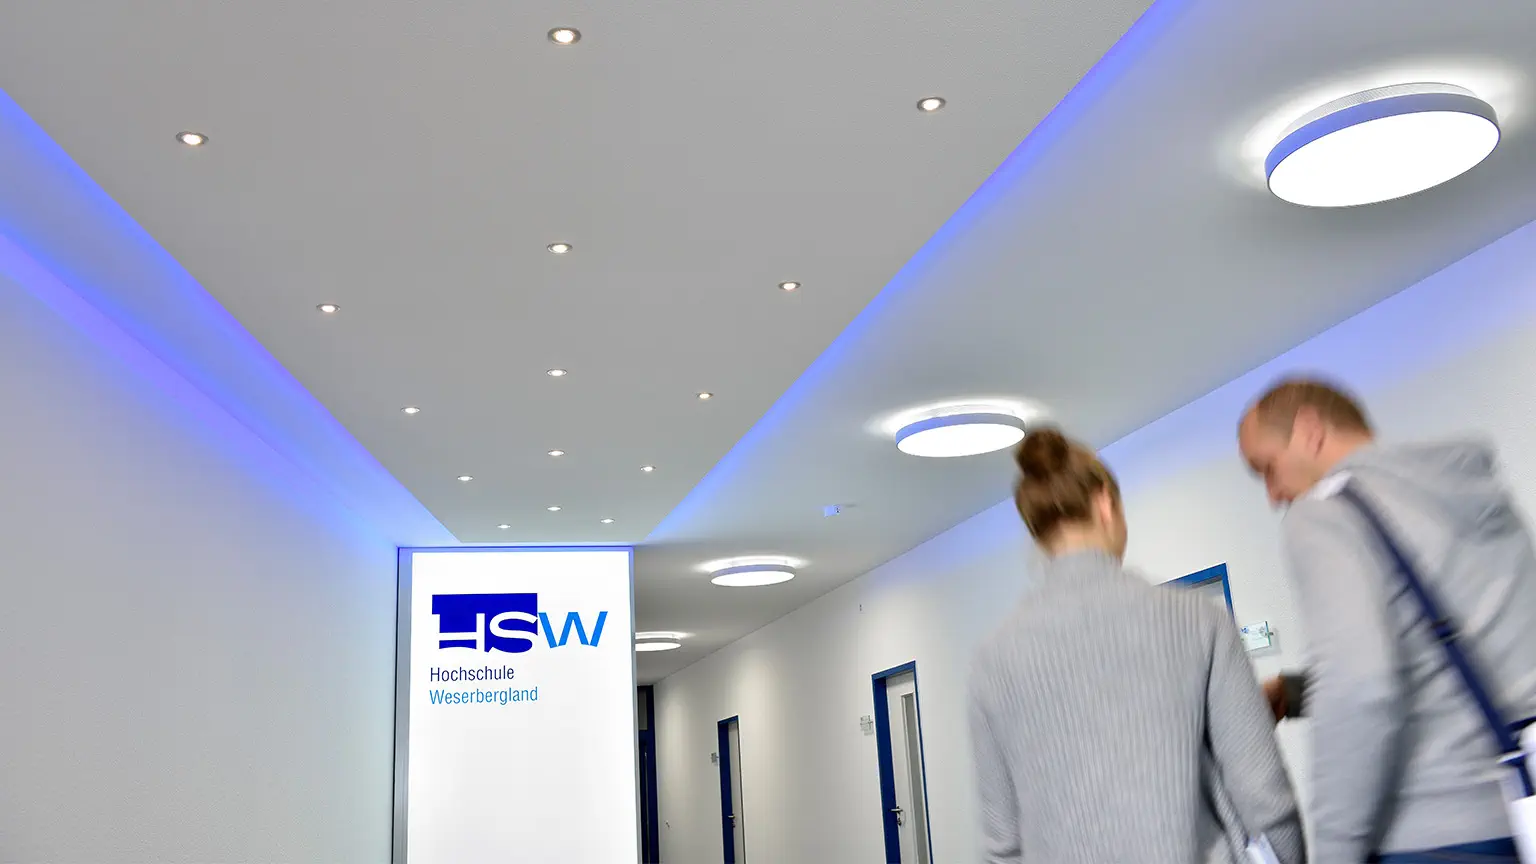 Eine Frau und ein Mann laufen auf dem Flur der HSW. Rechts von ihnen sieht man Türen mit blauem Rahmen und links ein beleuchtetes Schild mit dem Logo der HSW sowie Spotlights an der decke, die leuchten.